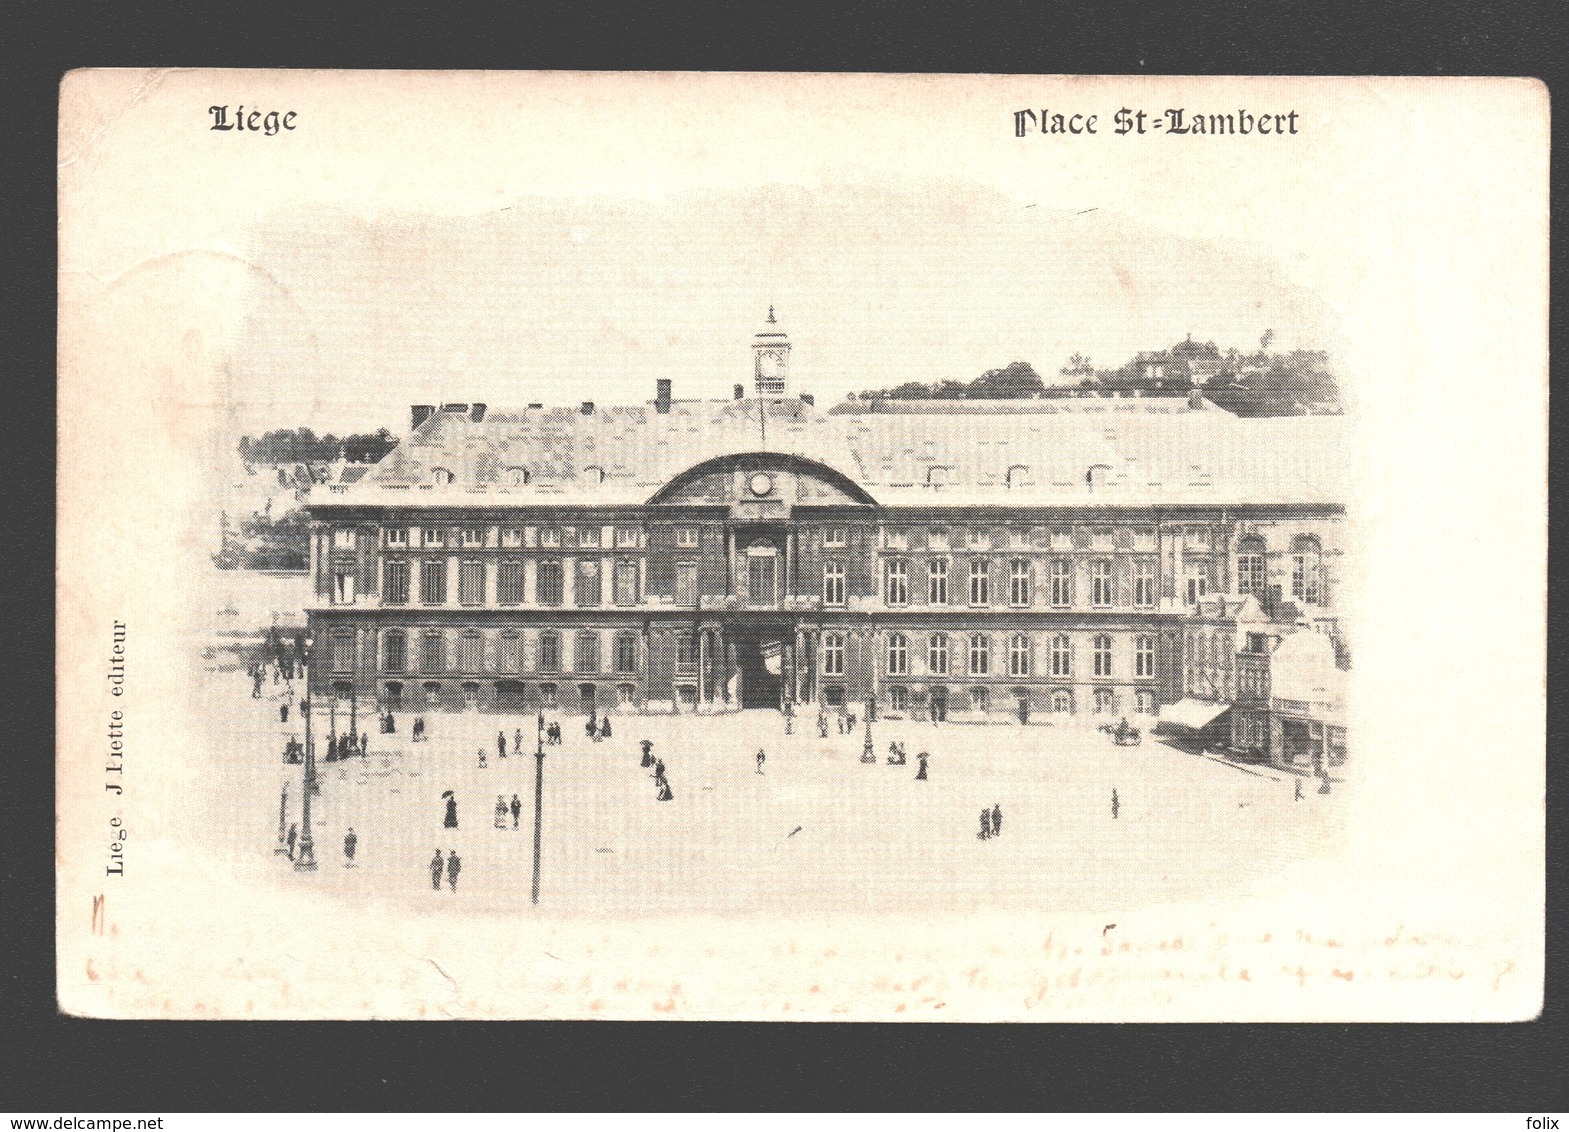 Liège - Place St-Lambert - 1900 - Dos Simple - éd. J. Piette - Luik